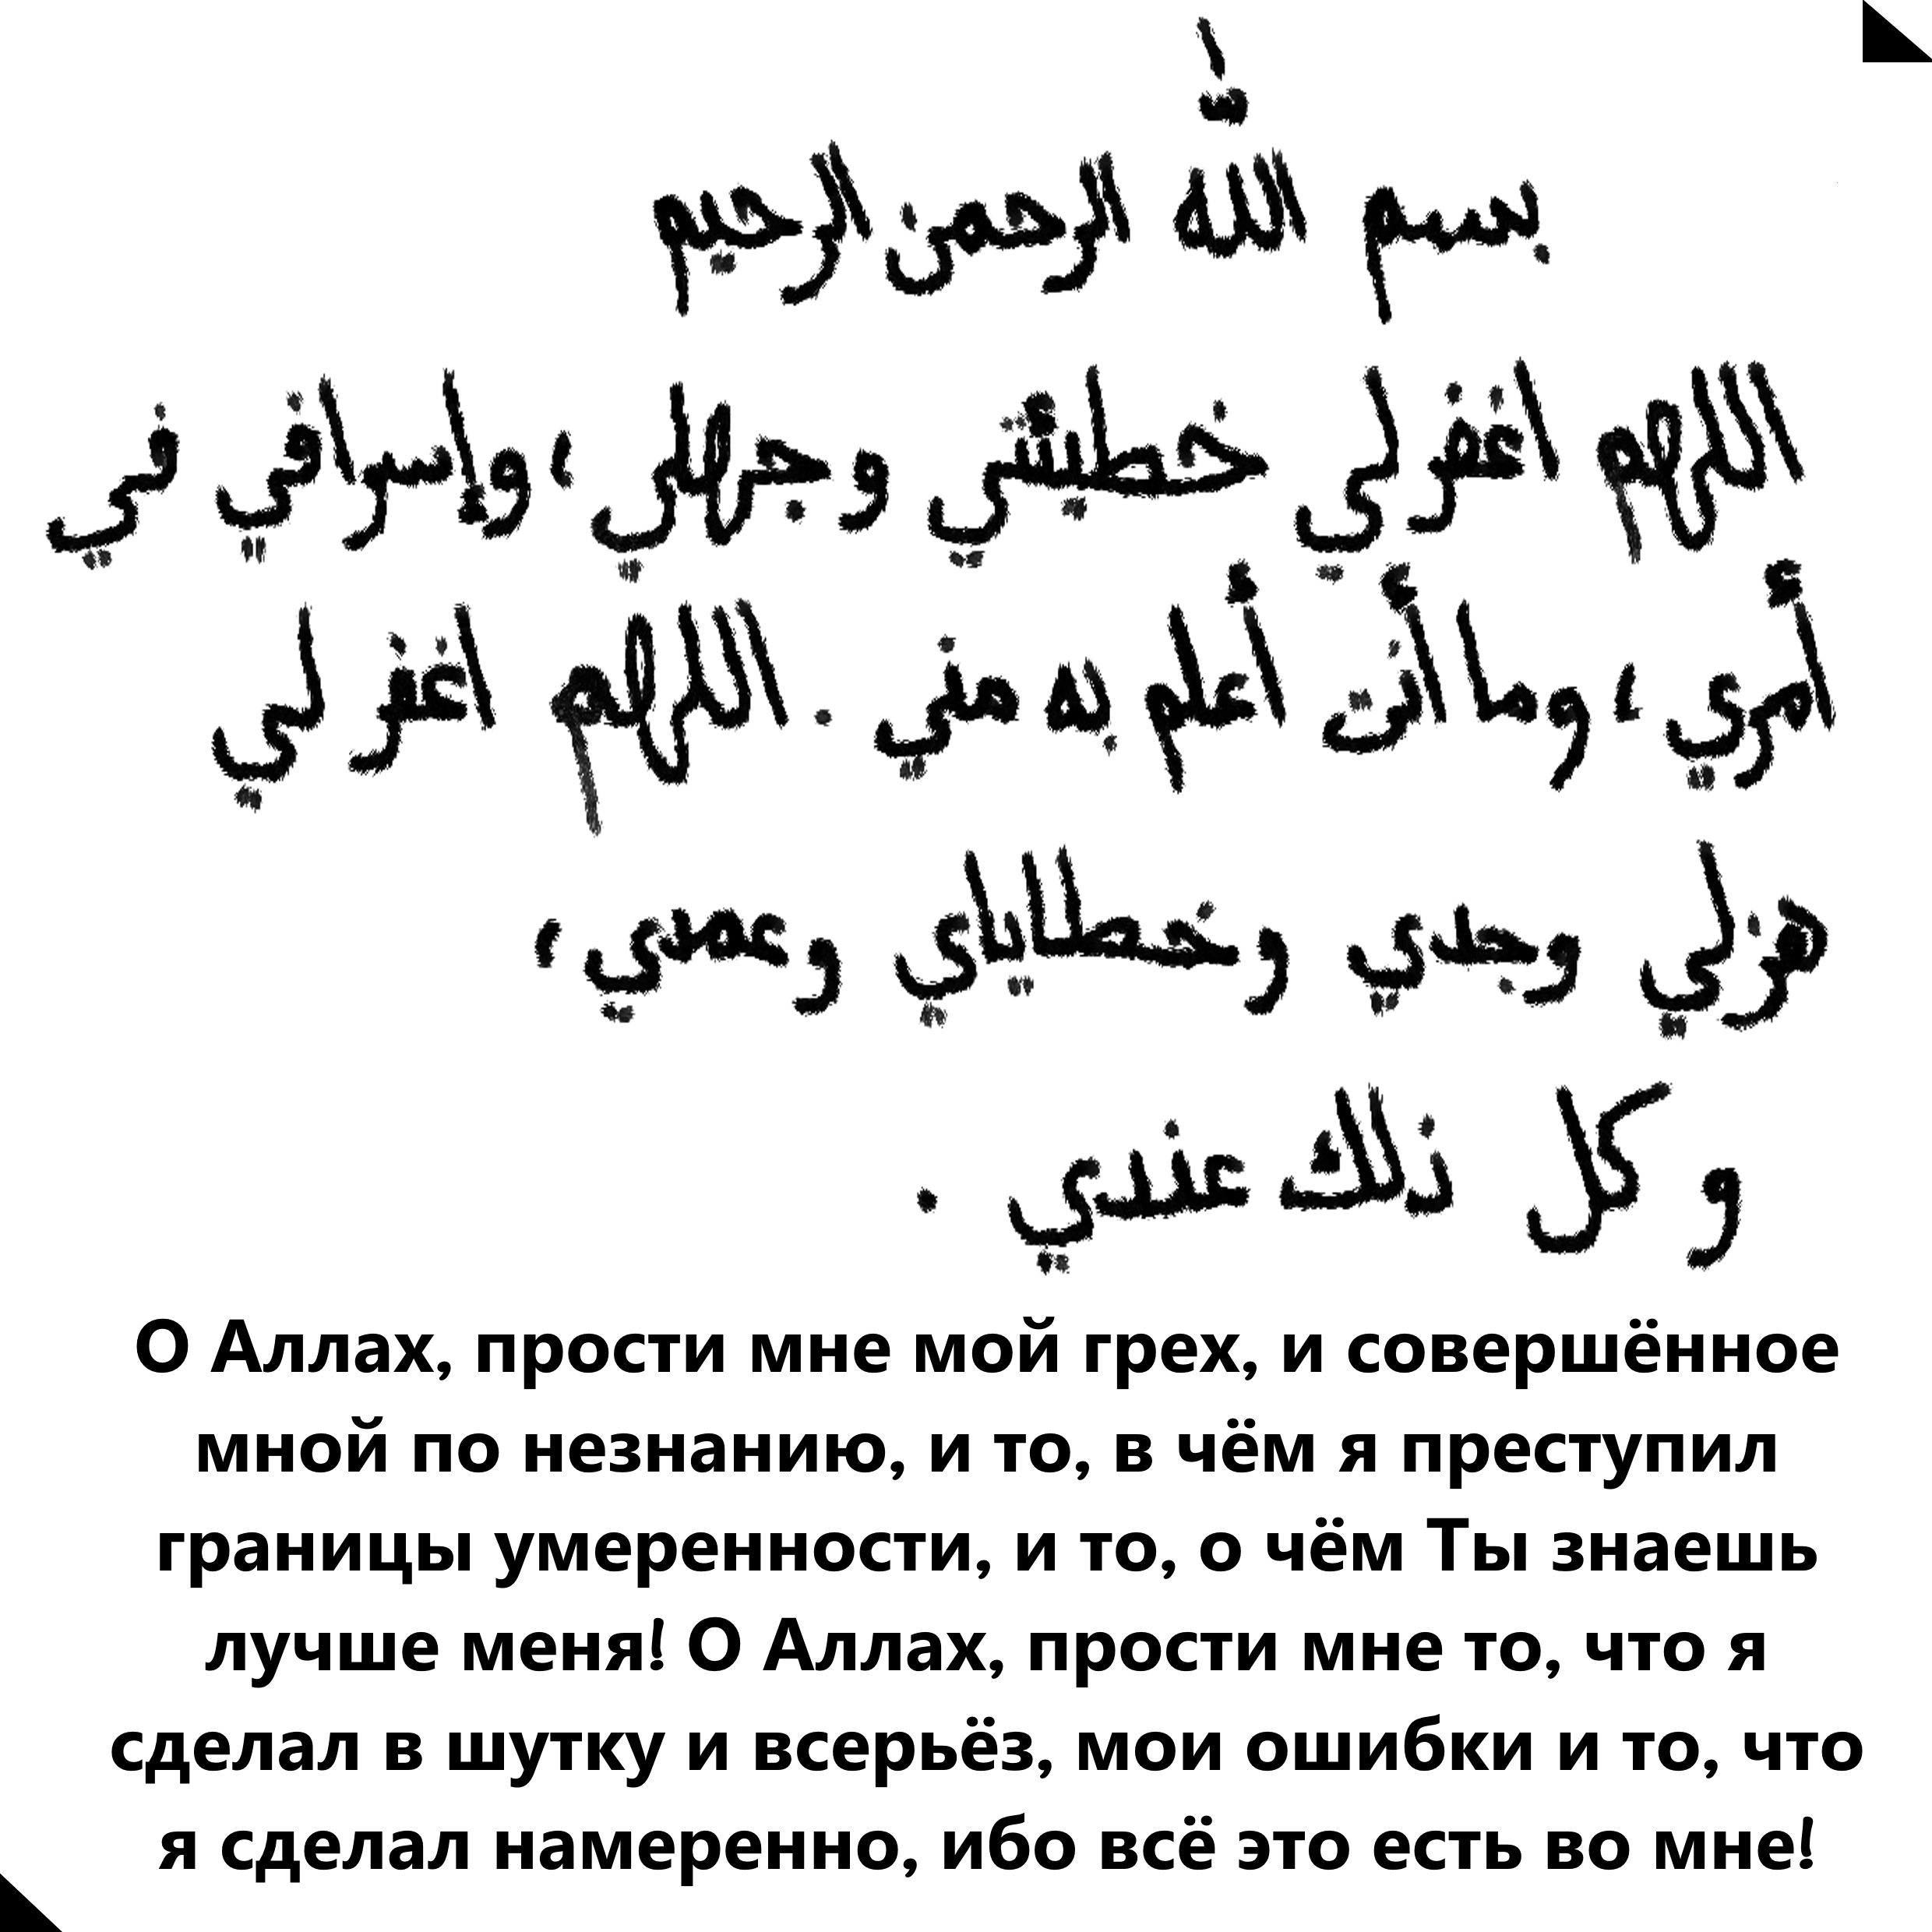 Текст молитвы мусульман. Молитва на арабском языке. Мусульманские молитвы на арабском языке. Масульманские малитвы на руском.